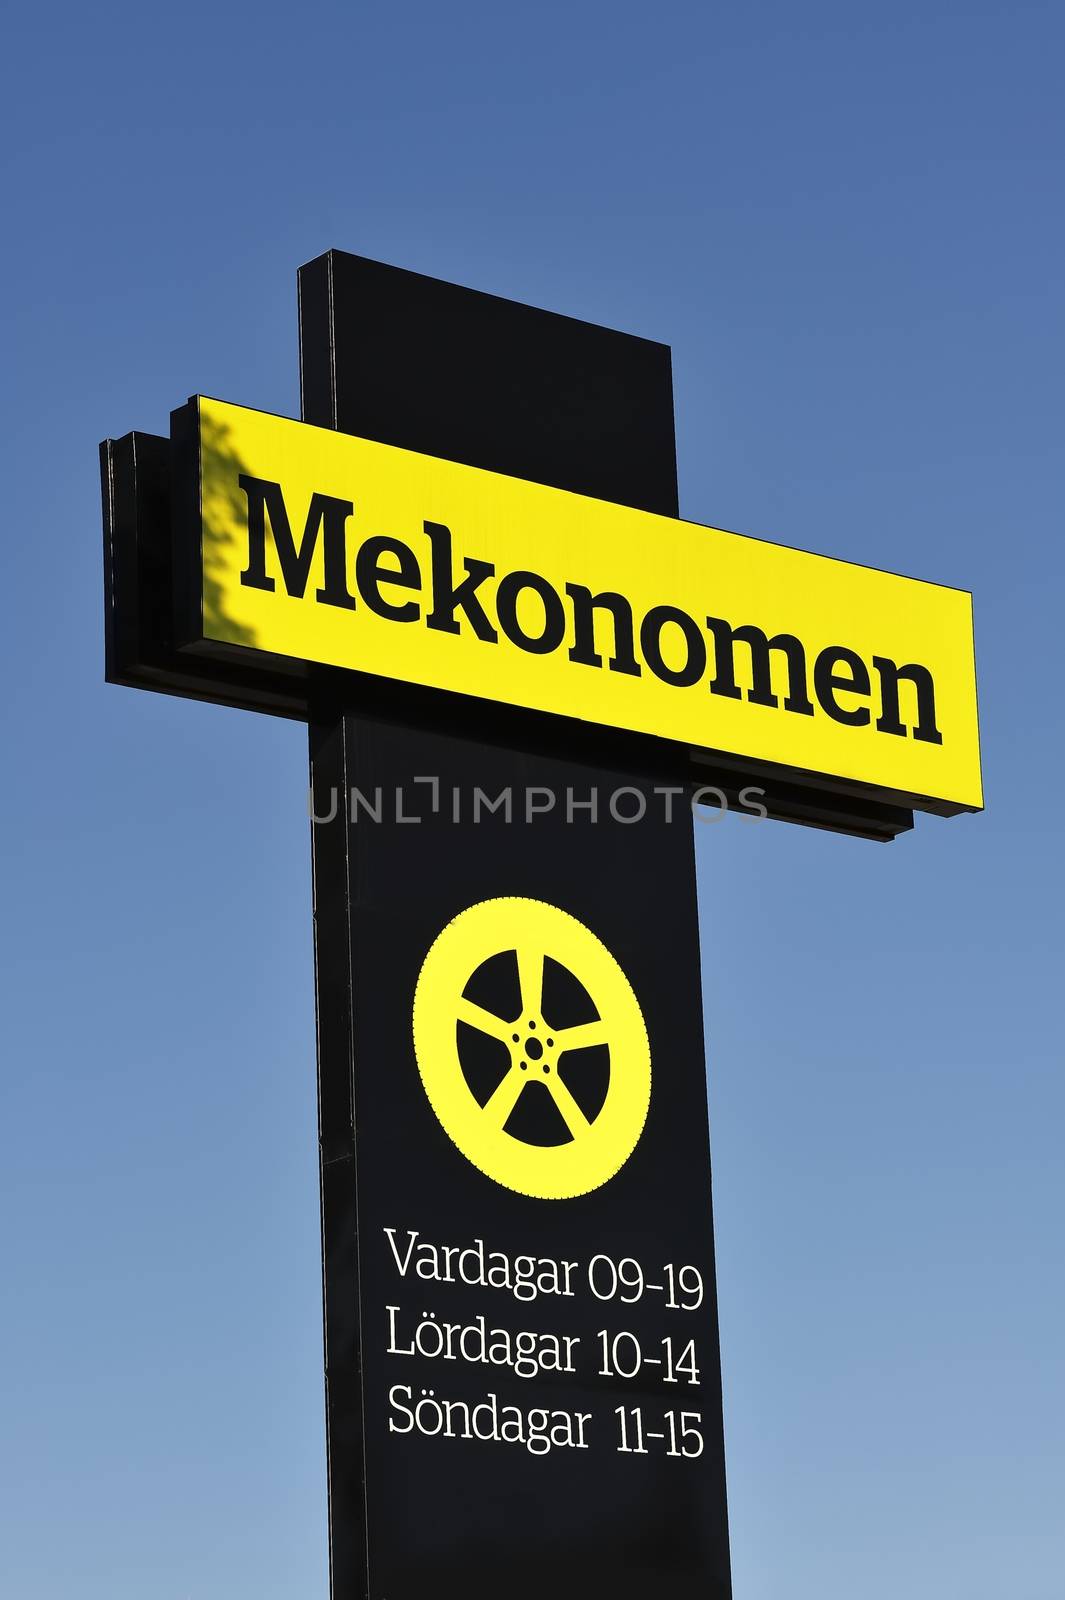 STOCKHOLM - MAY 1 2013: Mekonomen logo sign on showroom premises photographed on may 1th 2013 in Stockholm, Sweden.